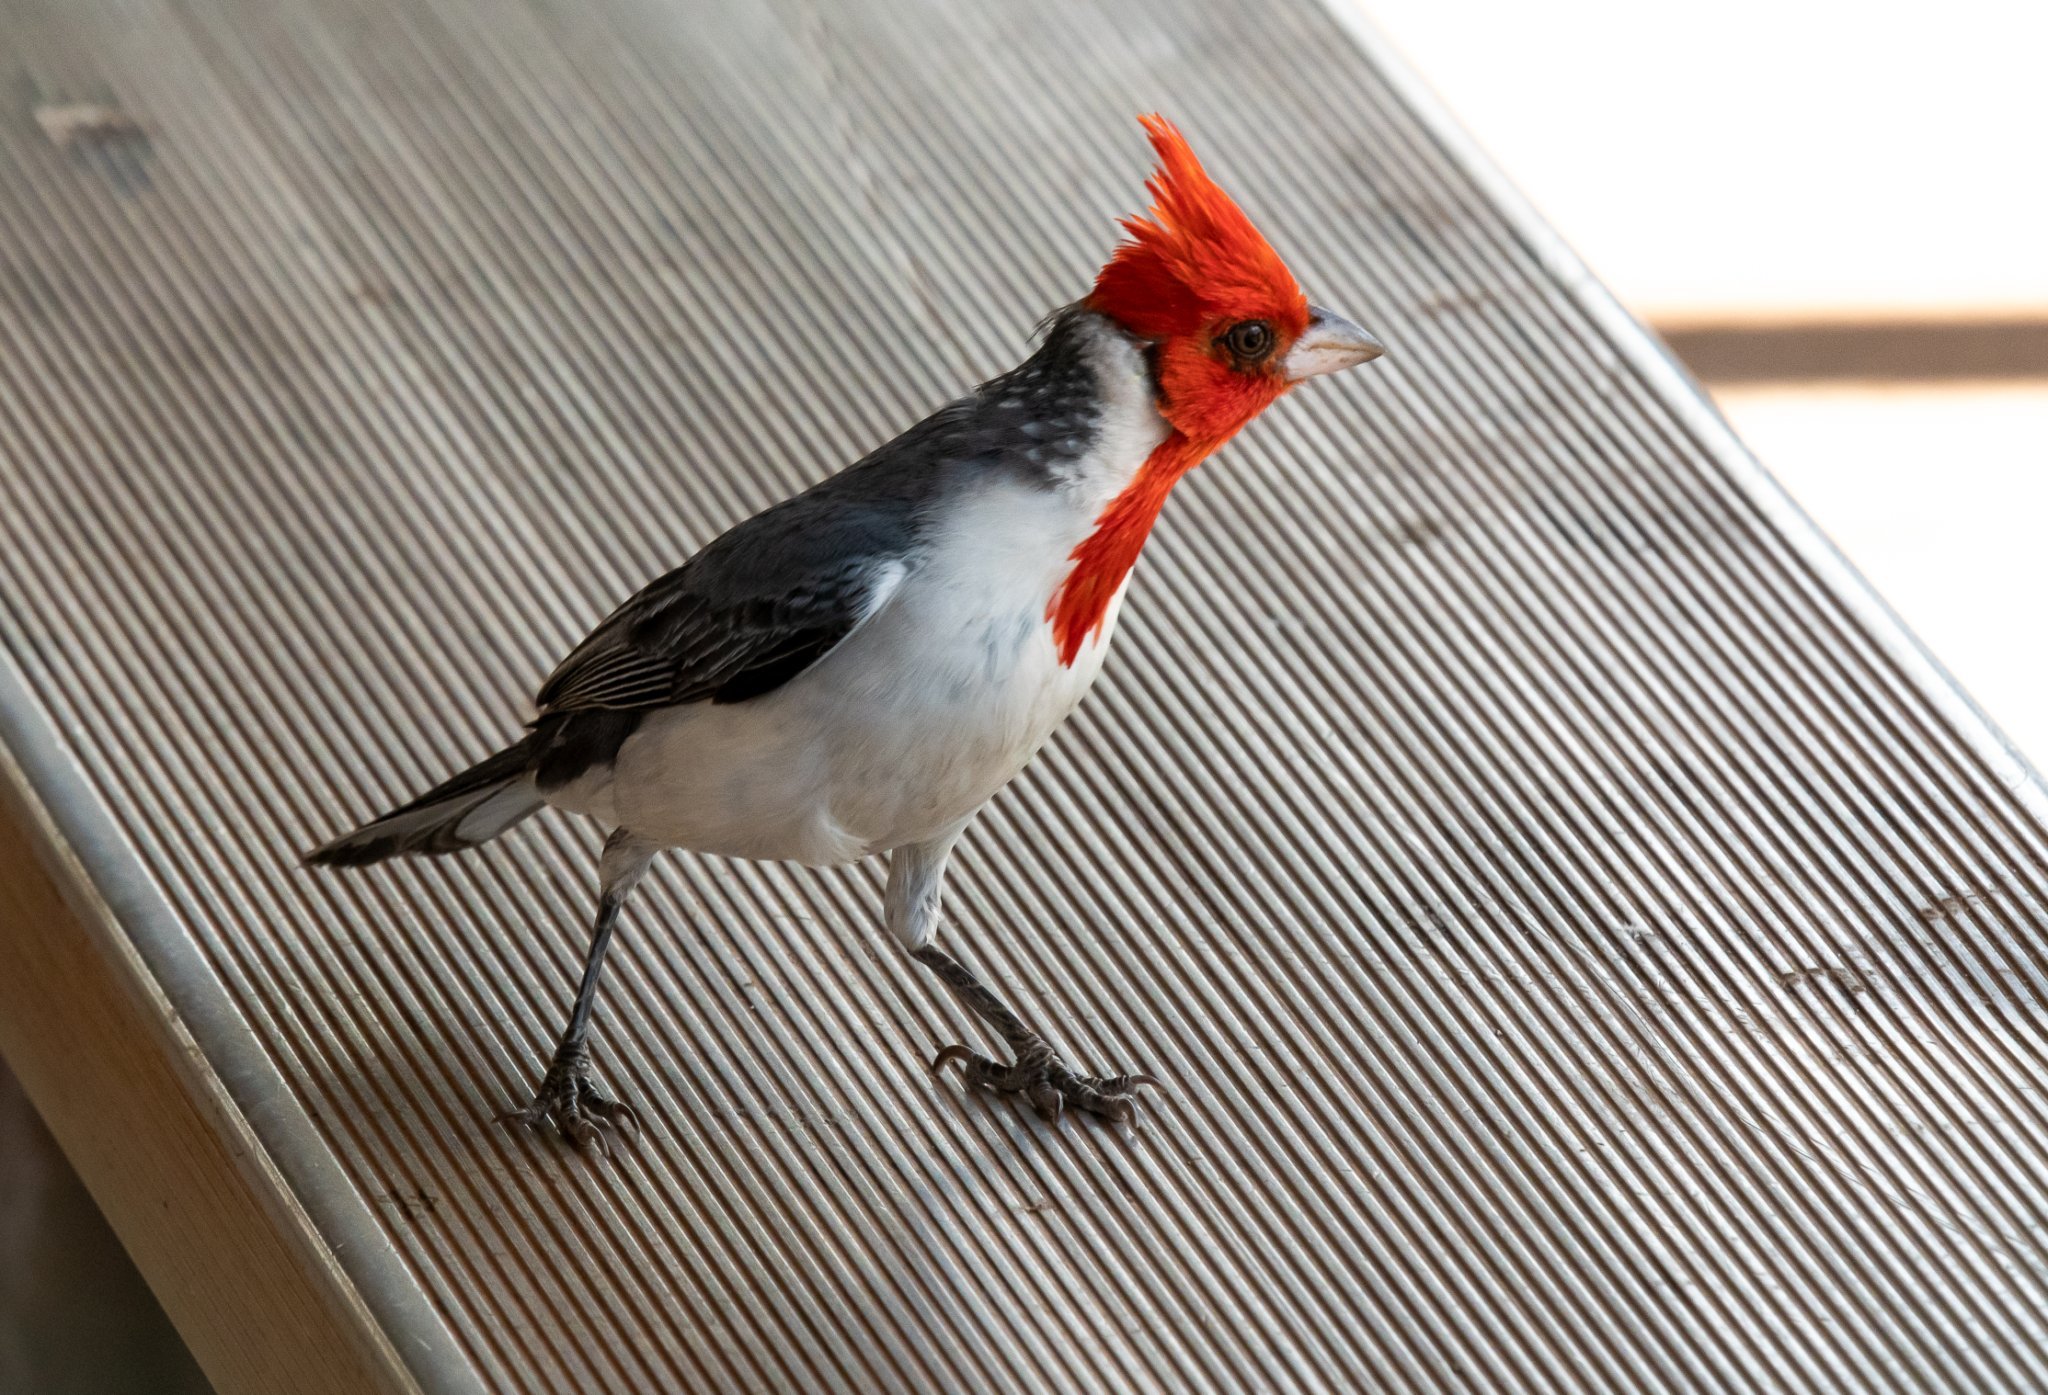 Image of a Cardinal bird.